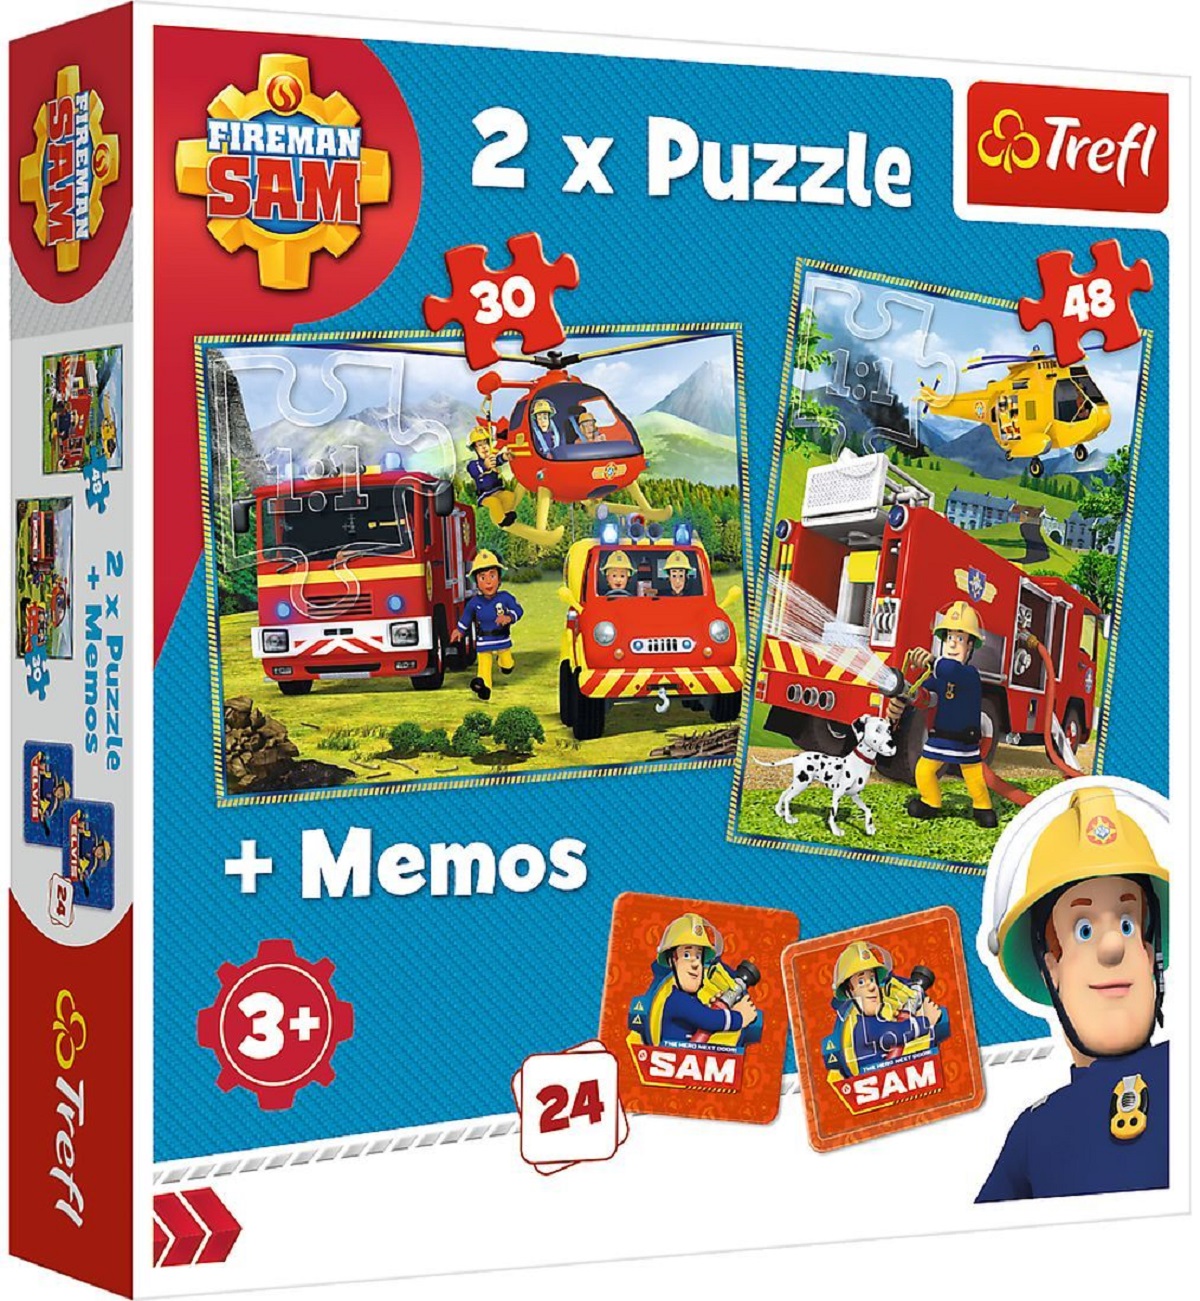 Puzzle 2 in 1 + Memo. Pompierii in actiune